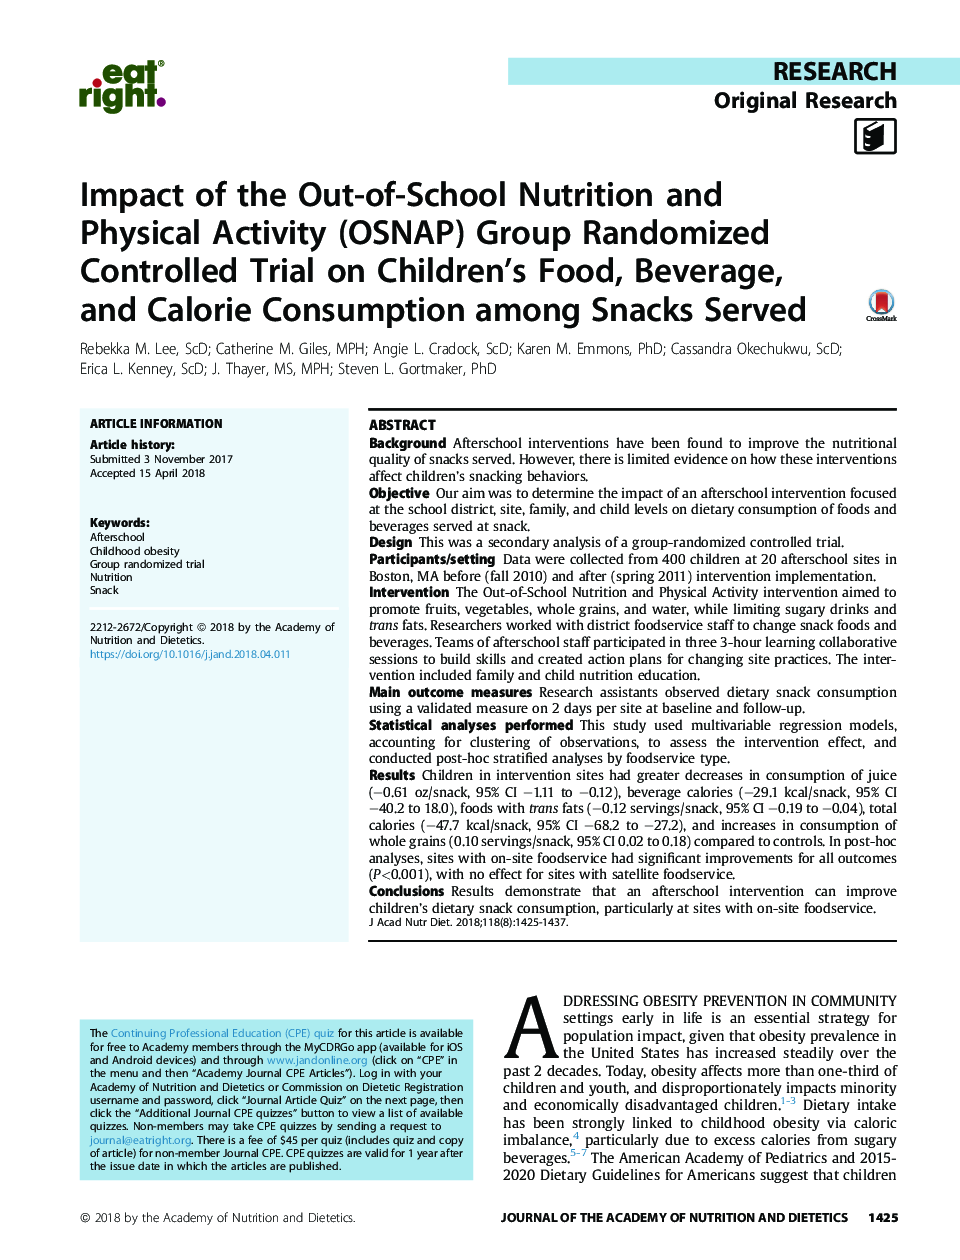 تاثیر تمرینات کنترل شده تصادفی شده در گروه تغذیه و فعالیت بدنی در خارج از مدرسه بر مصرف مواد غذایی، نوشیدنی و کالری کودکان در میان اسنک ها 